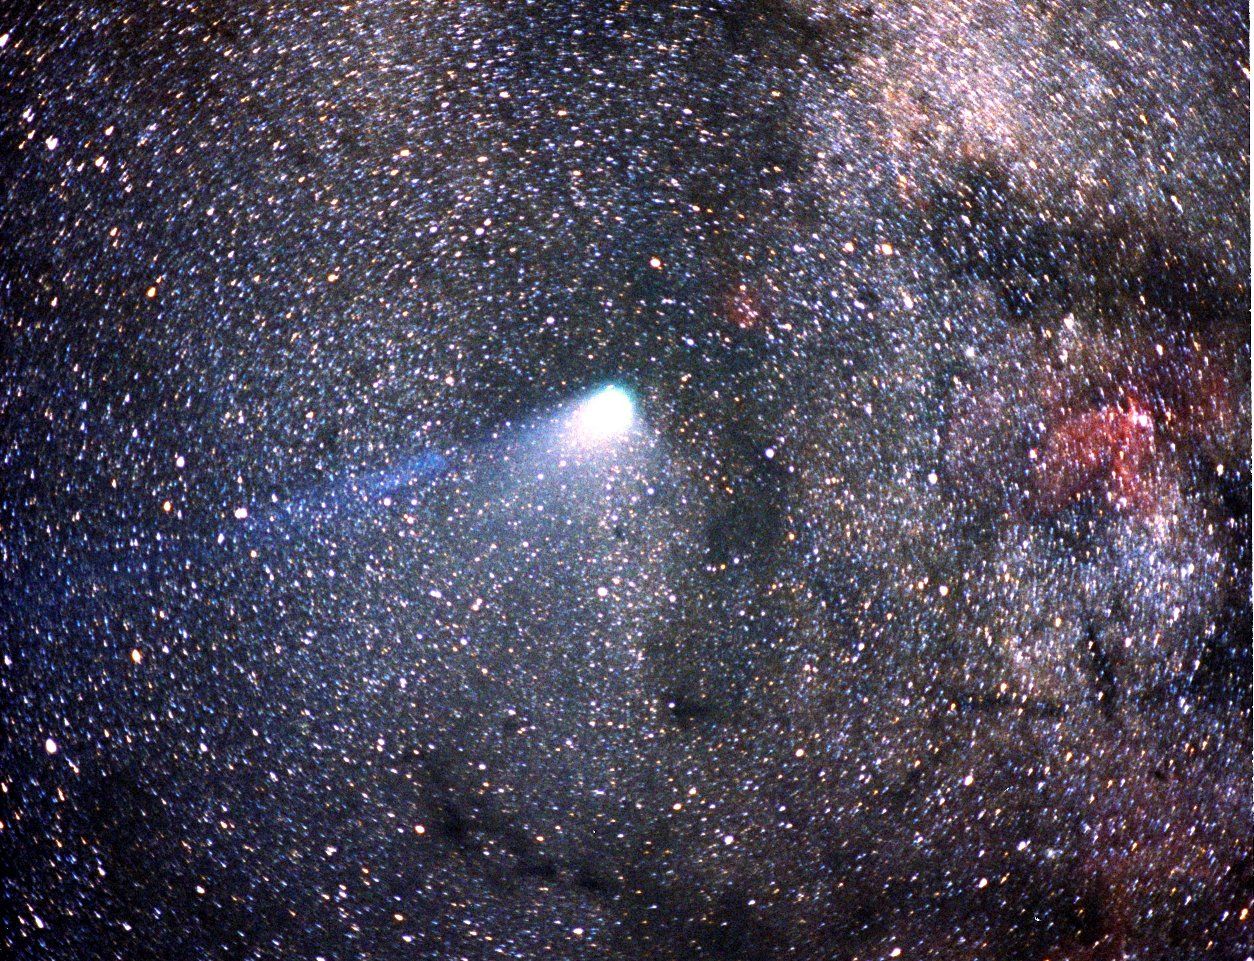 彗星照片实拍图片